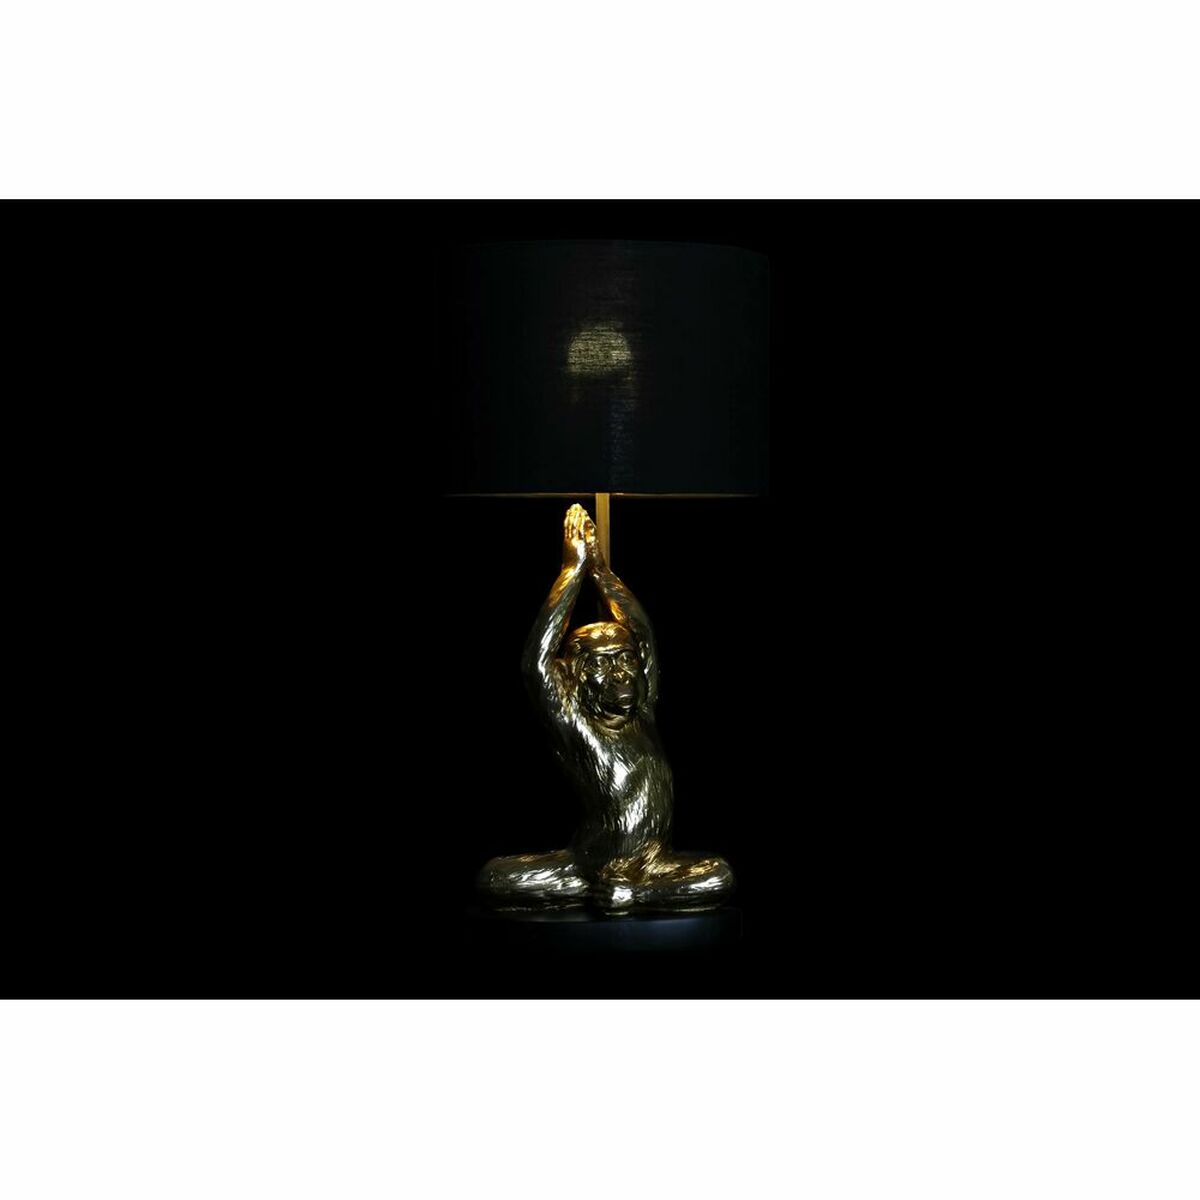 Table lamp black golden monkey